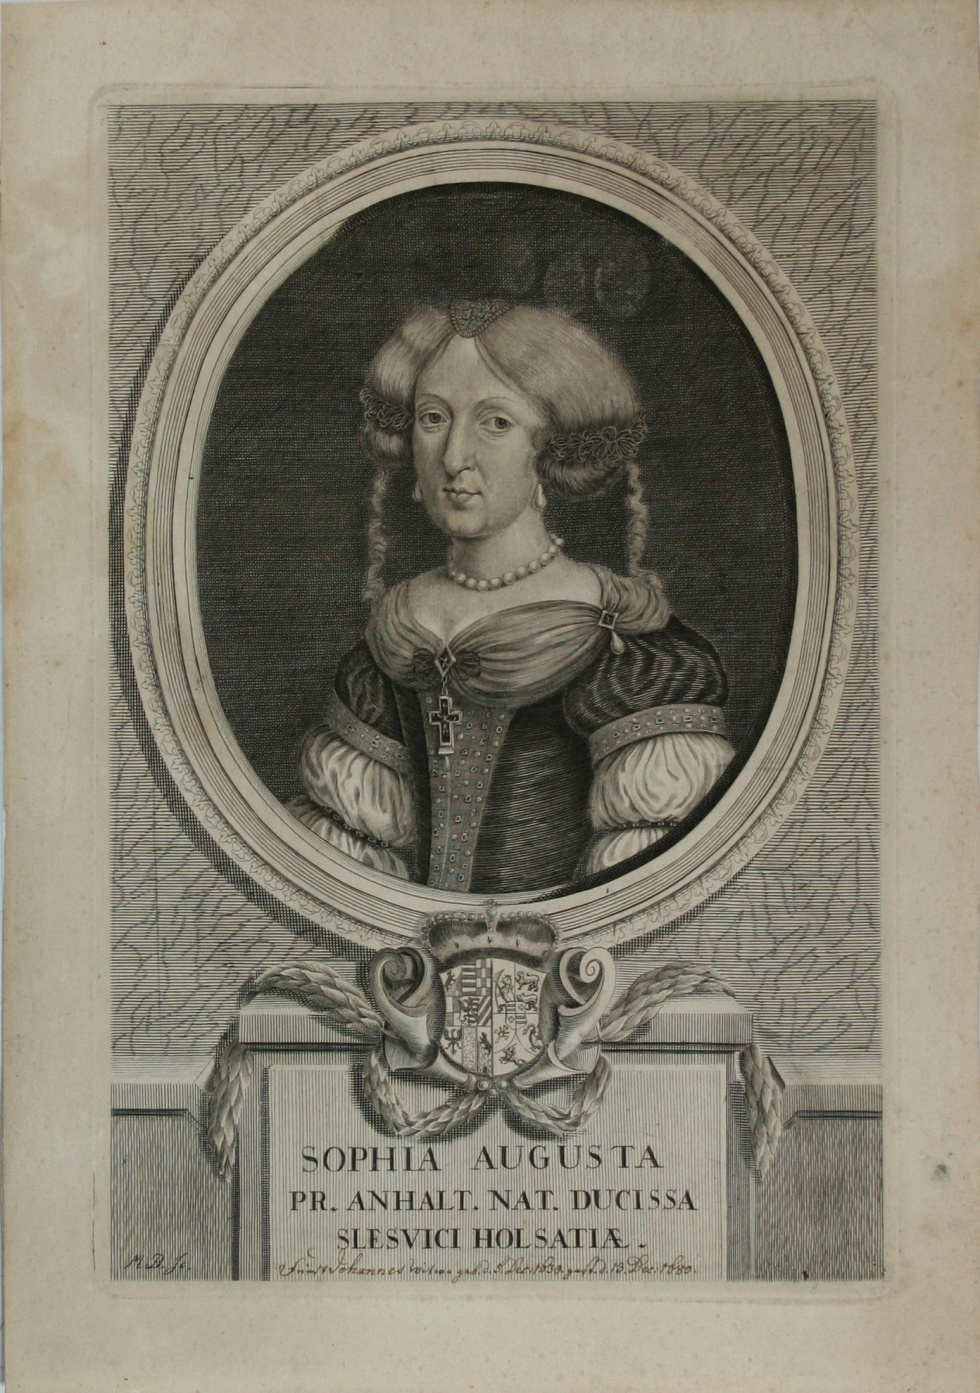 "SOPHIA AUGUSTA PR. ANHALT. NAT. DUCISSA SLESVICI HOLSATIA ." - Sophie Auguste von Anhalt-Zerbst (1630-1680) (Schlossmuseum Jever CC BY-NC-SA)